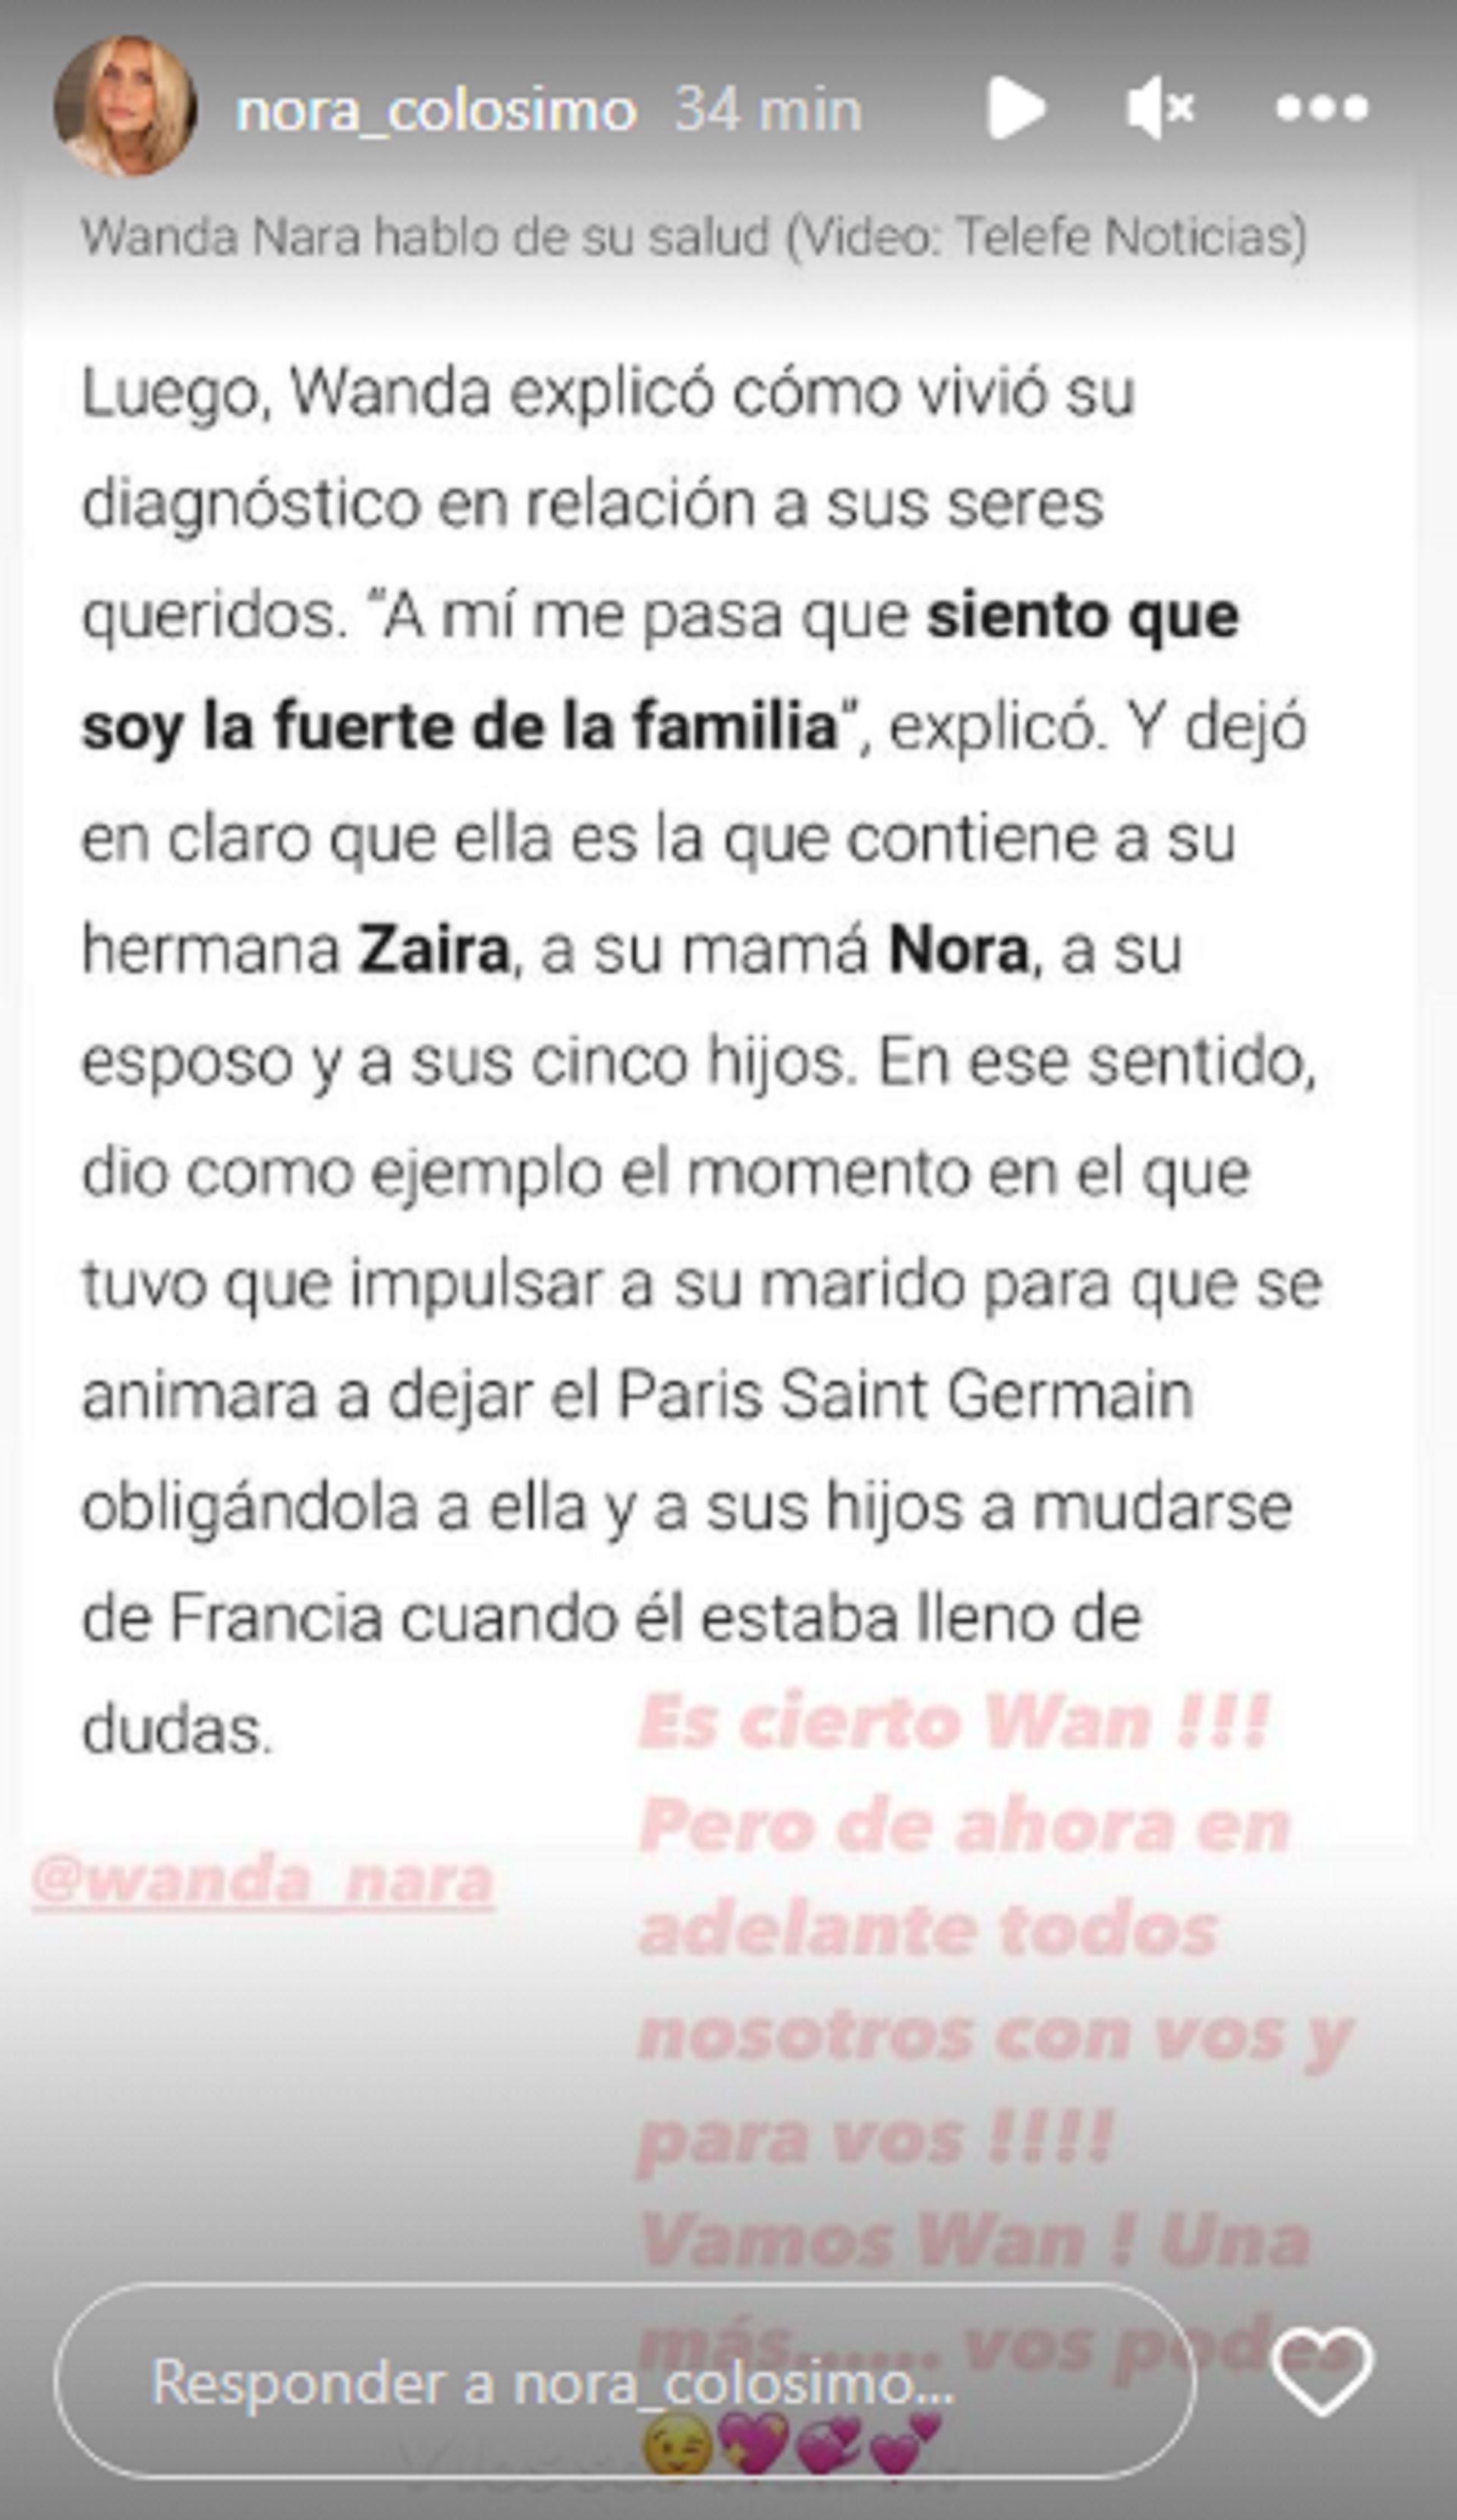 El posteo de Nora Colosimo sobre la salud de Wanda Nara (Instagram @nora_colosimo)